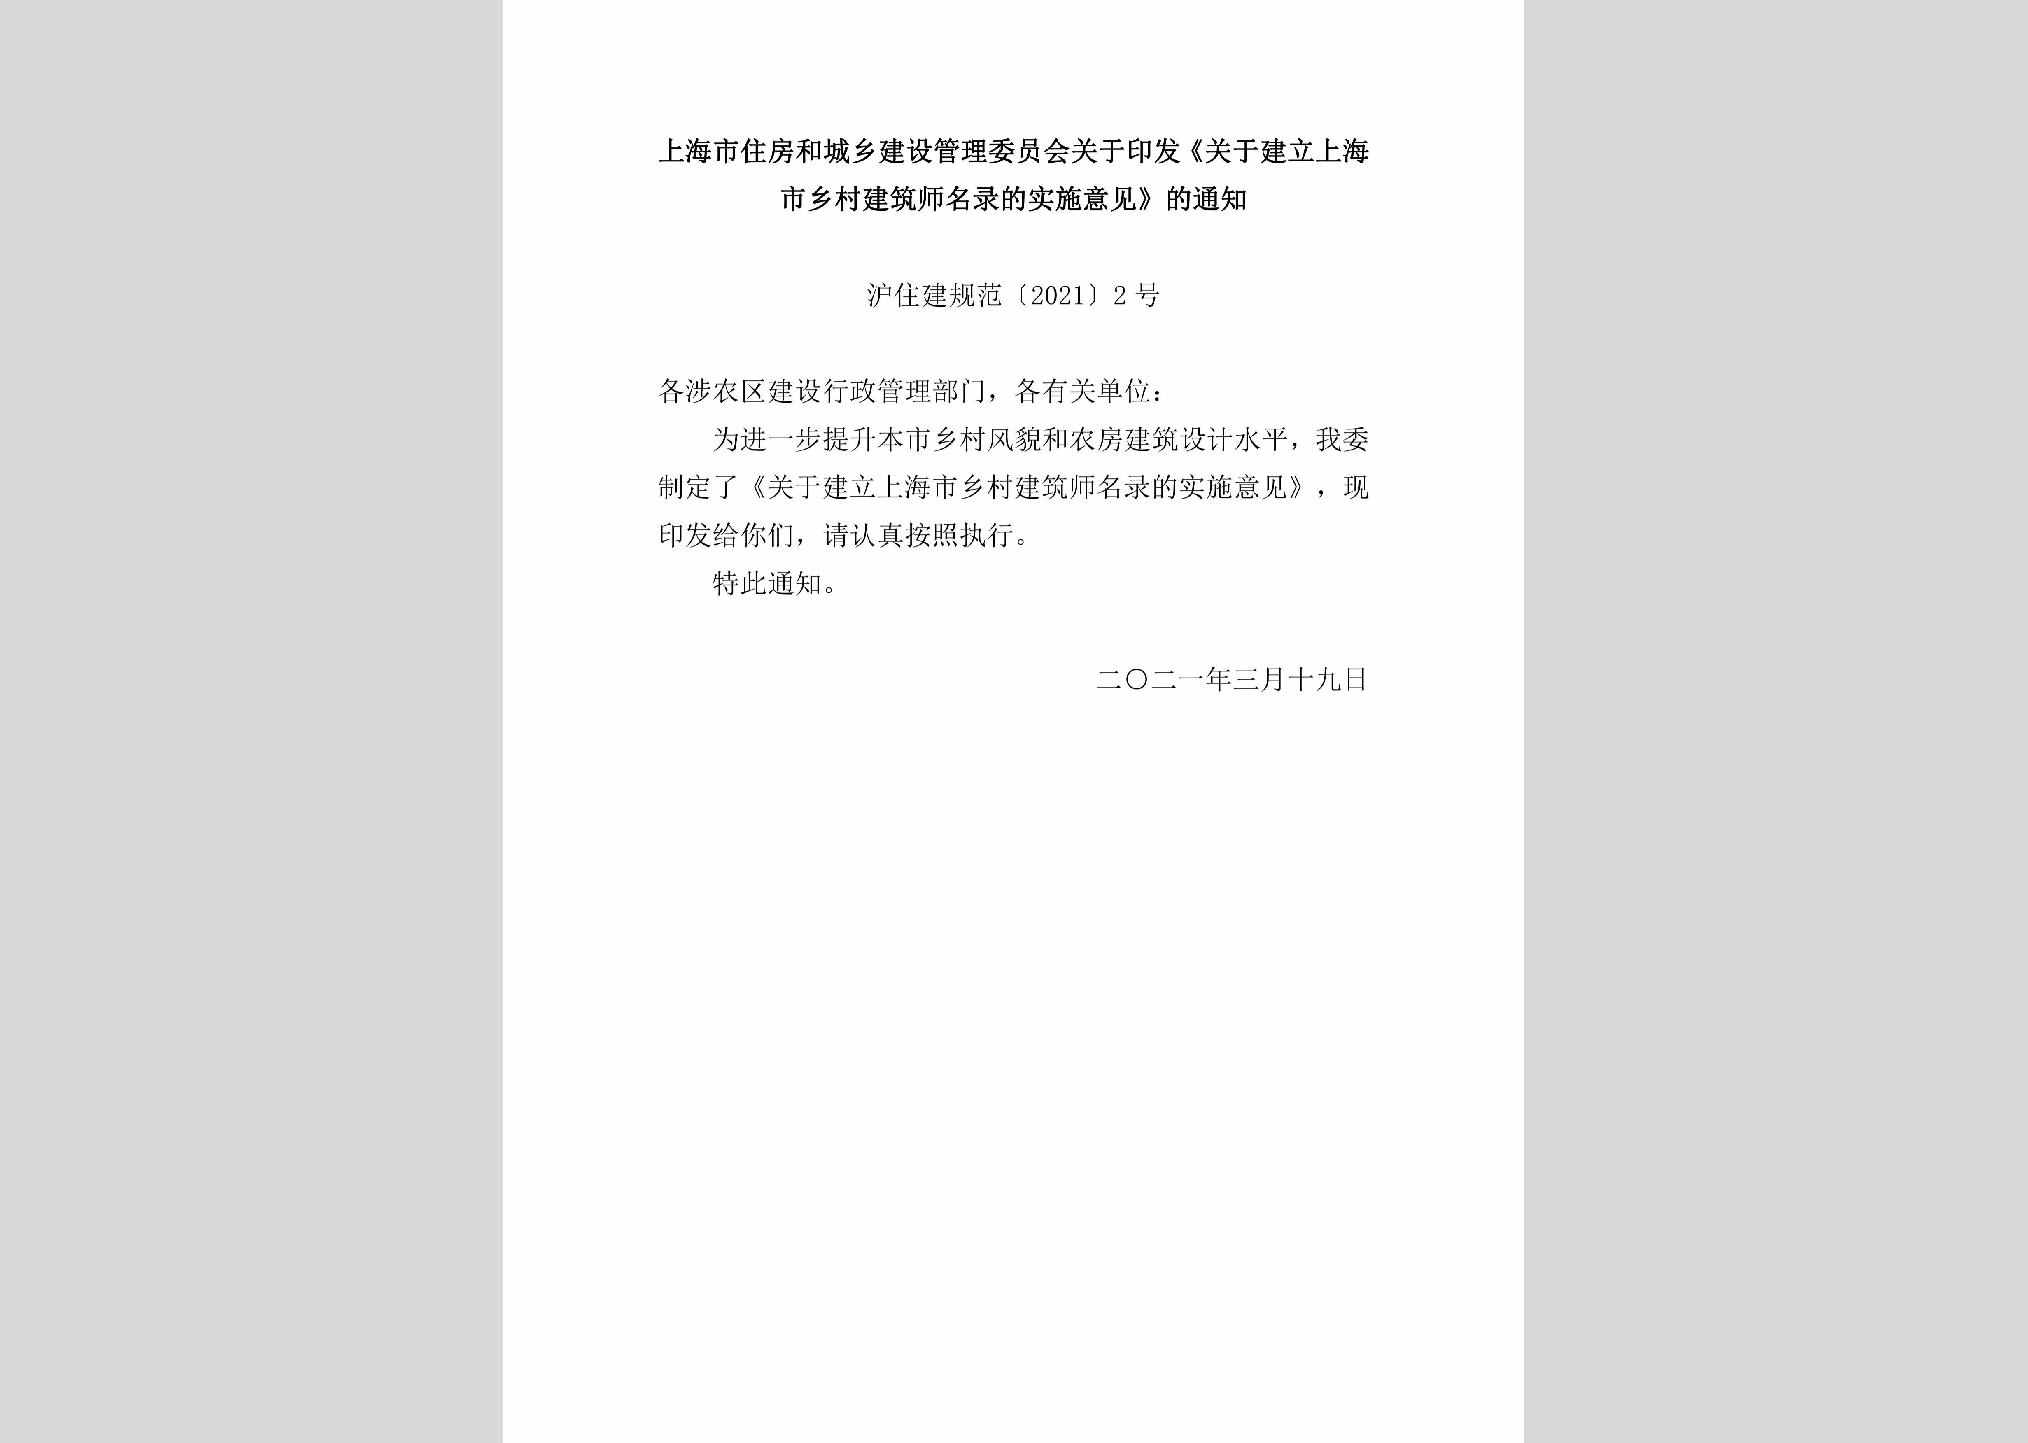 沪住建规范[2021]2号：上海市住房和城乡建设管理委员会关于印发《关于建立上海市乡村建筑师名录的实施意见》的通知